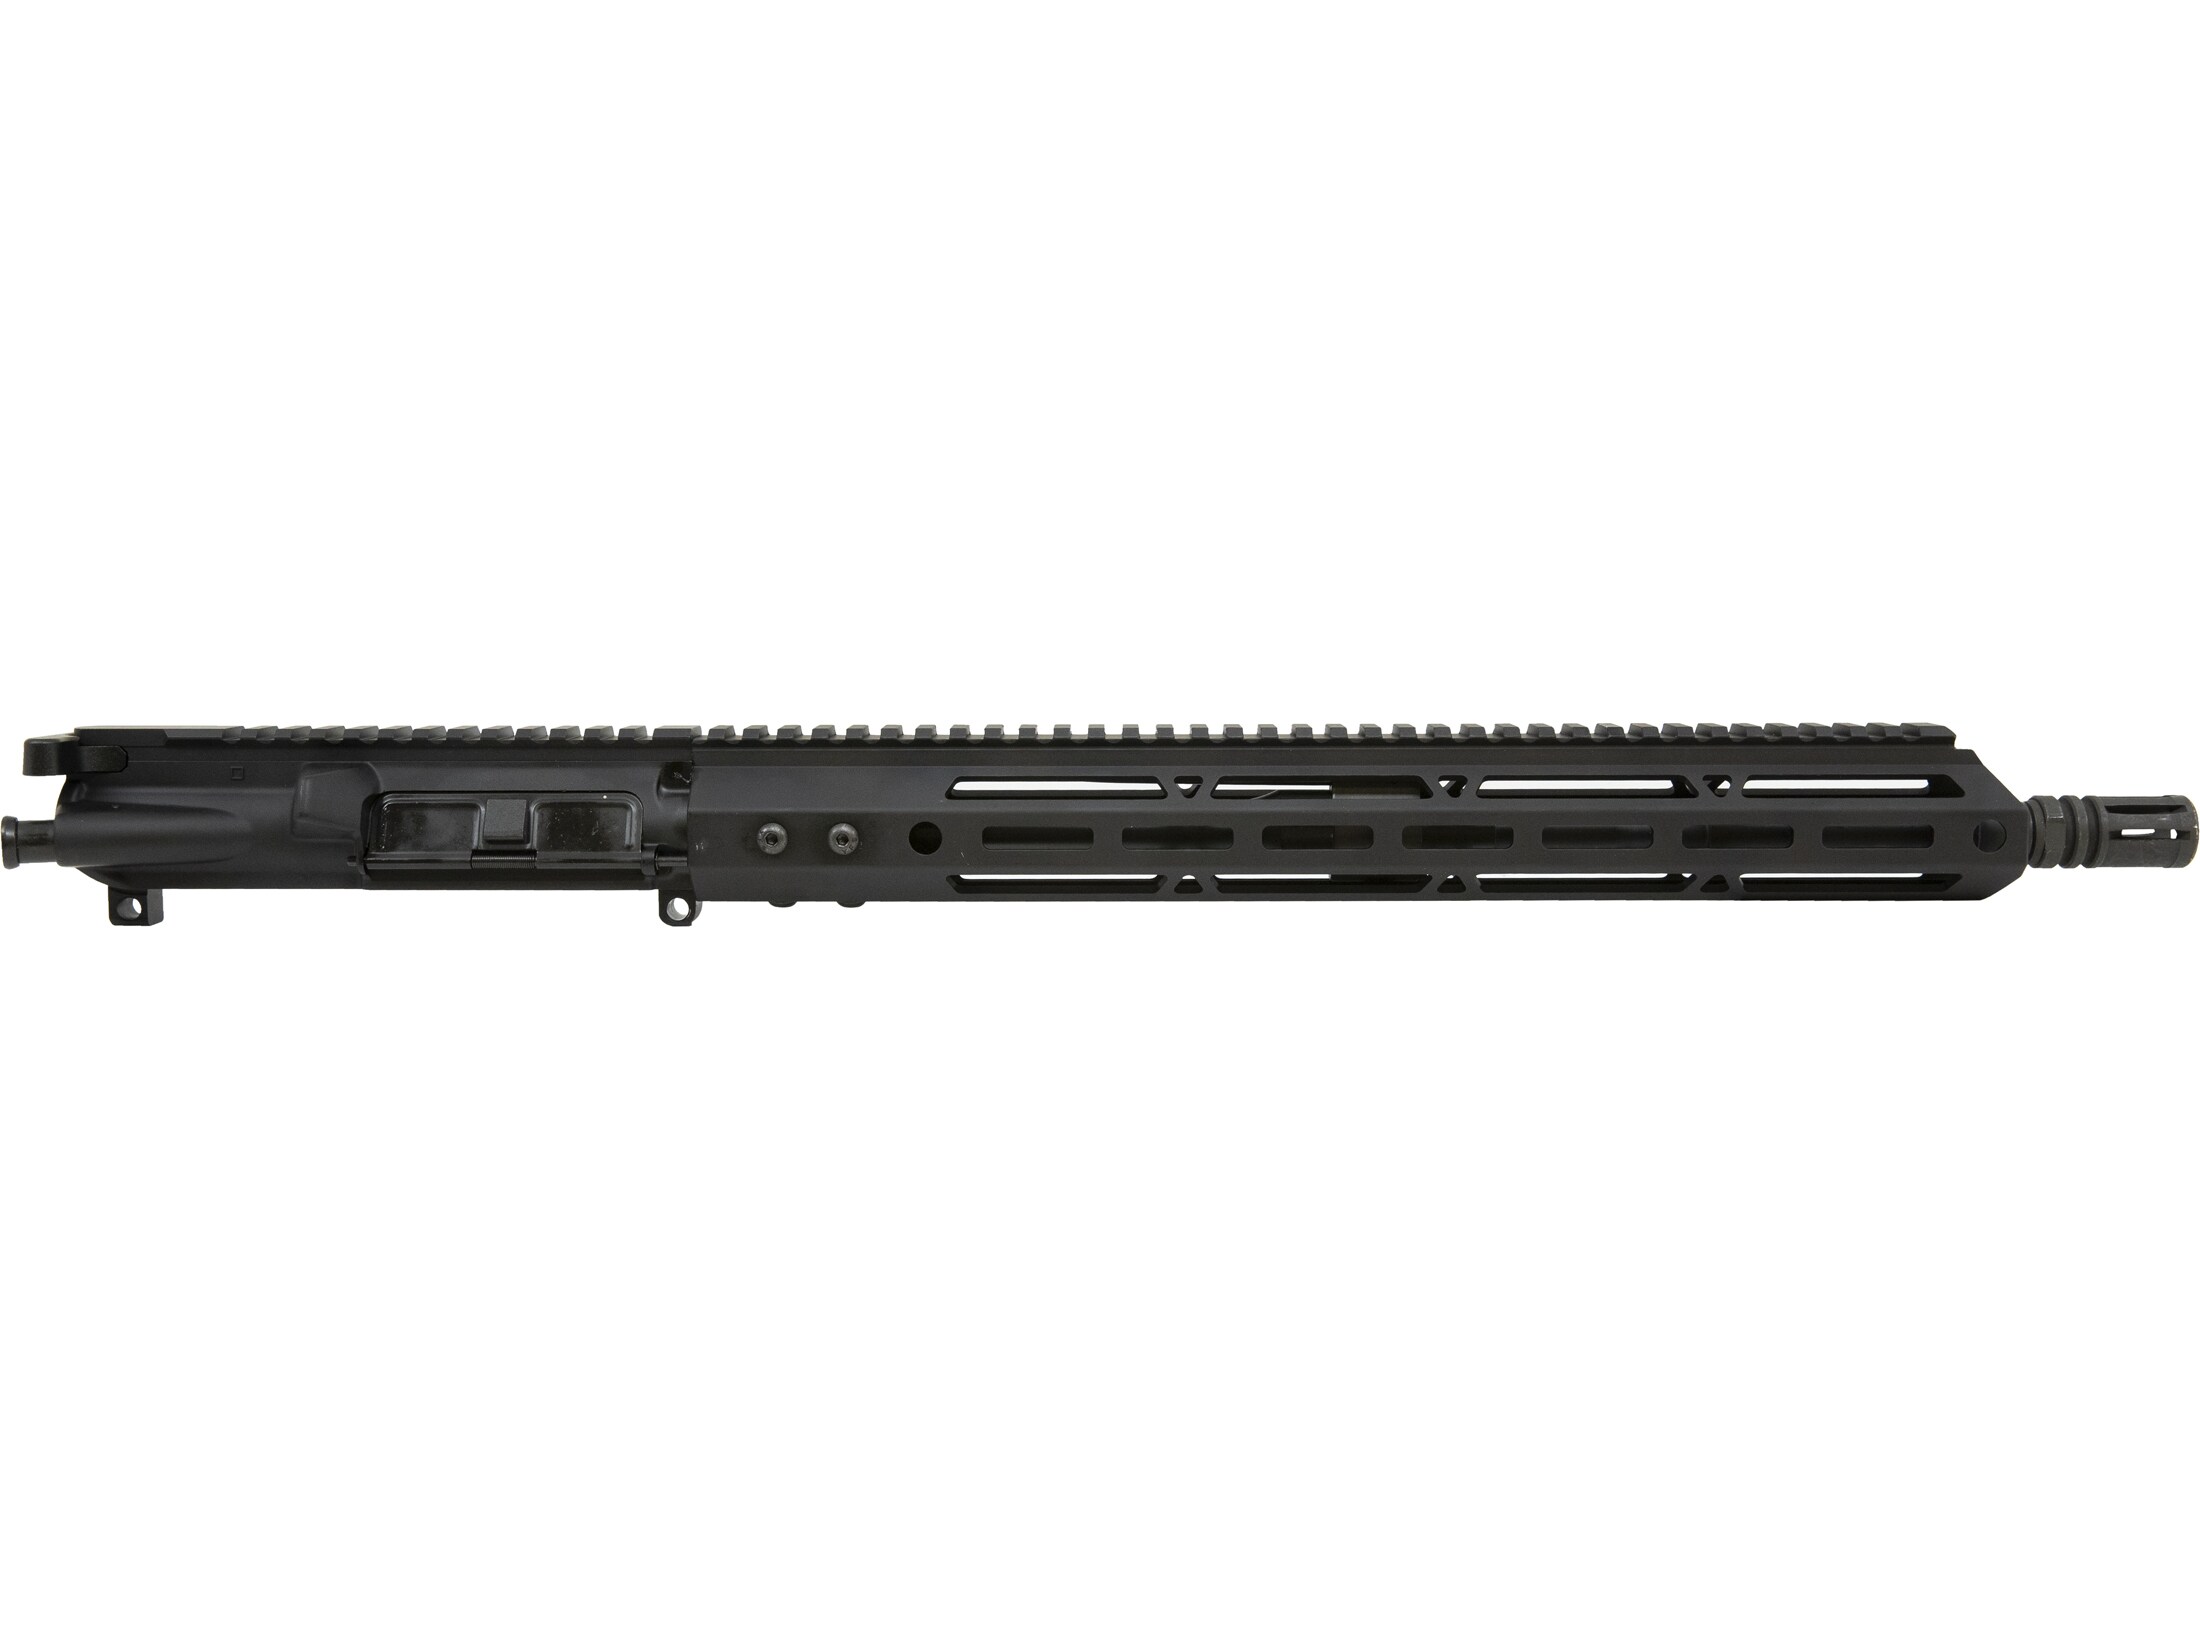 AR-STONER AR-15 A3 Upper Receiver Assembly 223 Remington (Wylde) 16